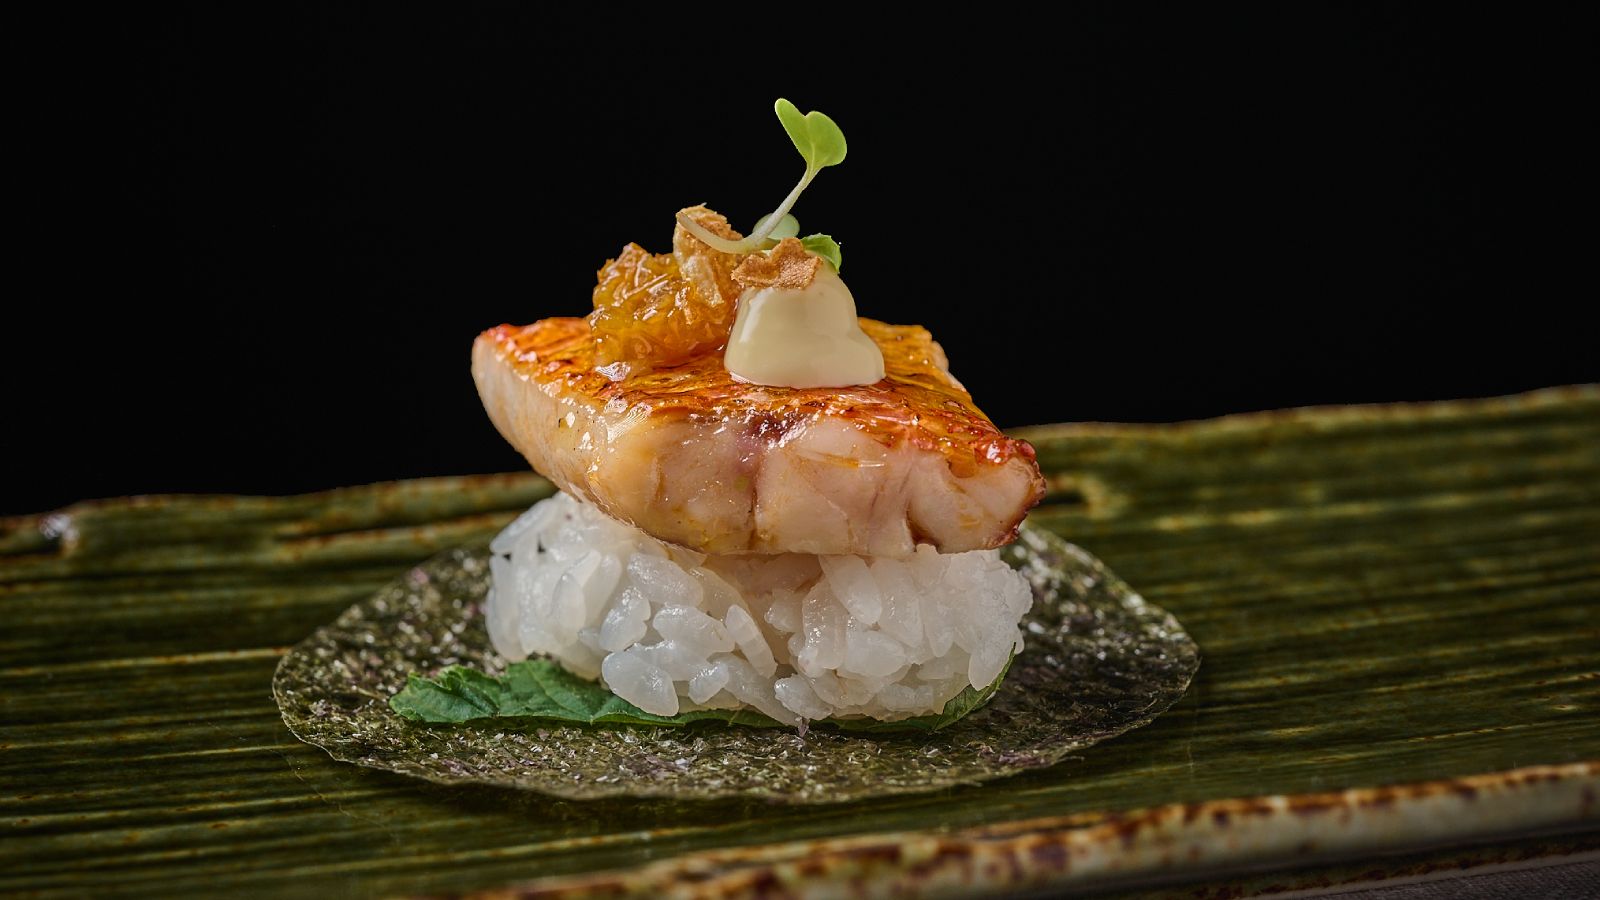 El llamado taco-sushi de salmonete. “Va asado previamente y acompañado de un aderezo de ají amarillo y wasabi fresco, además de un alioli de yuzu kosho”, explica Arévalo. Una lámina de hoja de shiso entre la oblea de alga nori y el arroz aporta frescor, matices anisados y mentolados. Como último detalle, unas láminas de ajo frito.
“Cerrar los ojos y a disfrutarlo”, recomienda.
El yuzu es una fruta originaria de China que permite innovar por su versatilidad culinaria. En el caso del ají amarillo se trata de un pimiento con un picante moderado y soportable. - imagen 4